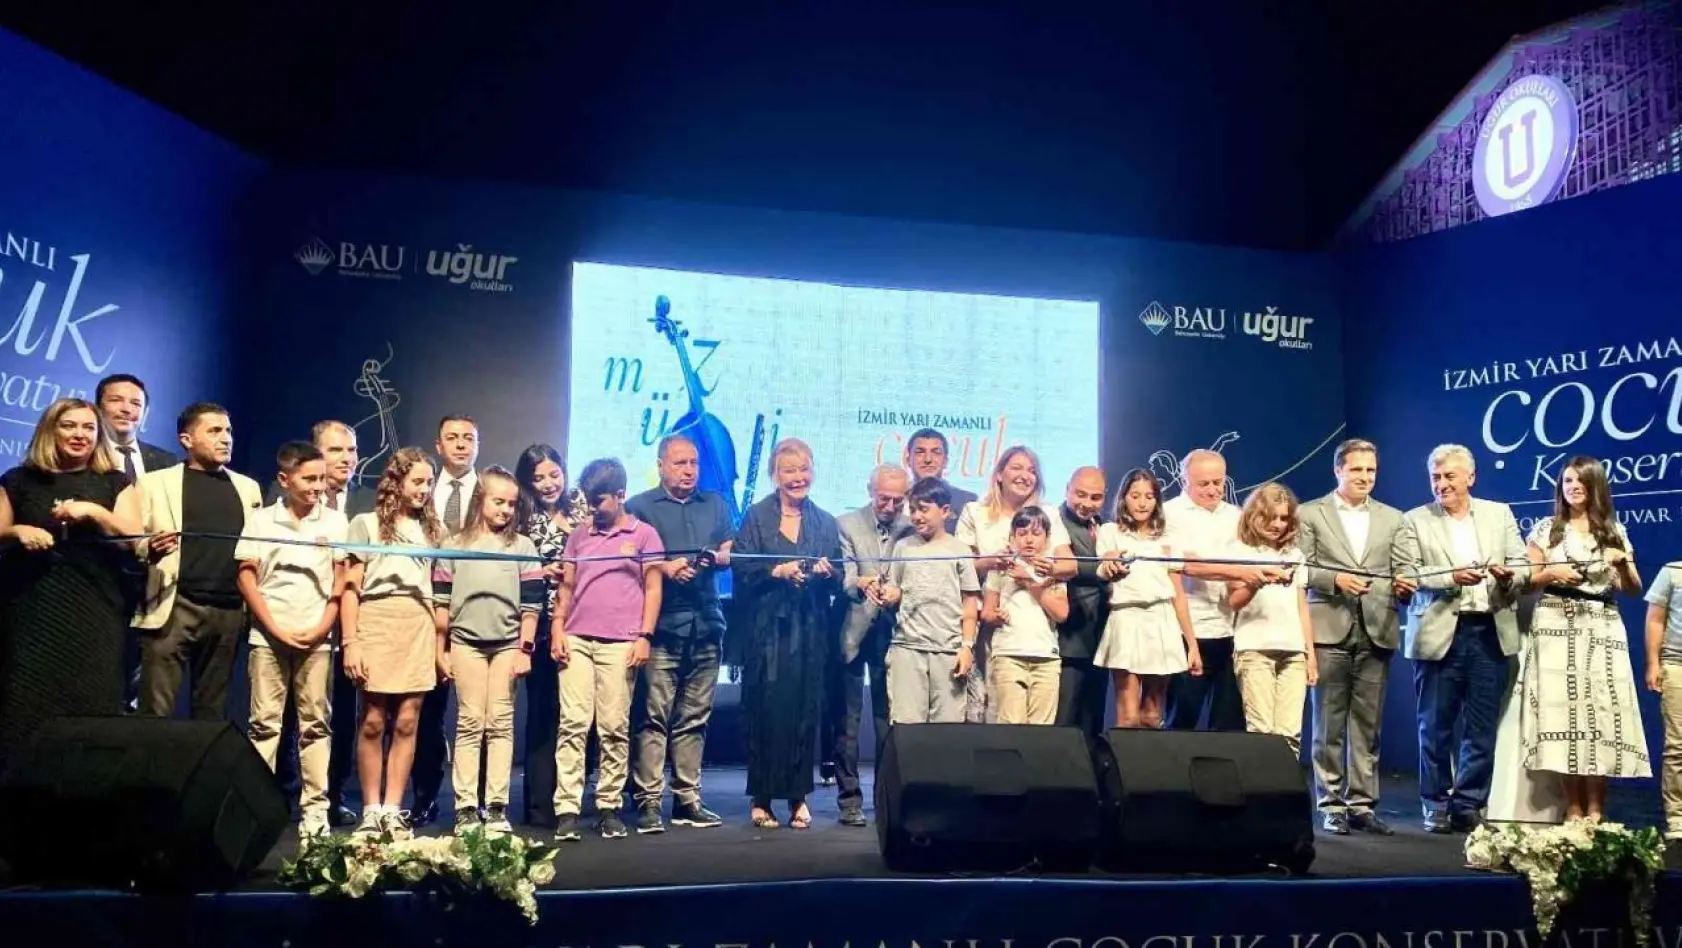 Geleceğin sanatçıları İzmir Yarı Zamanlı Çocuk Konservatuvarı'nda yetişecek